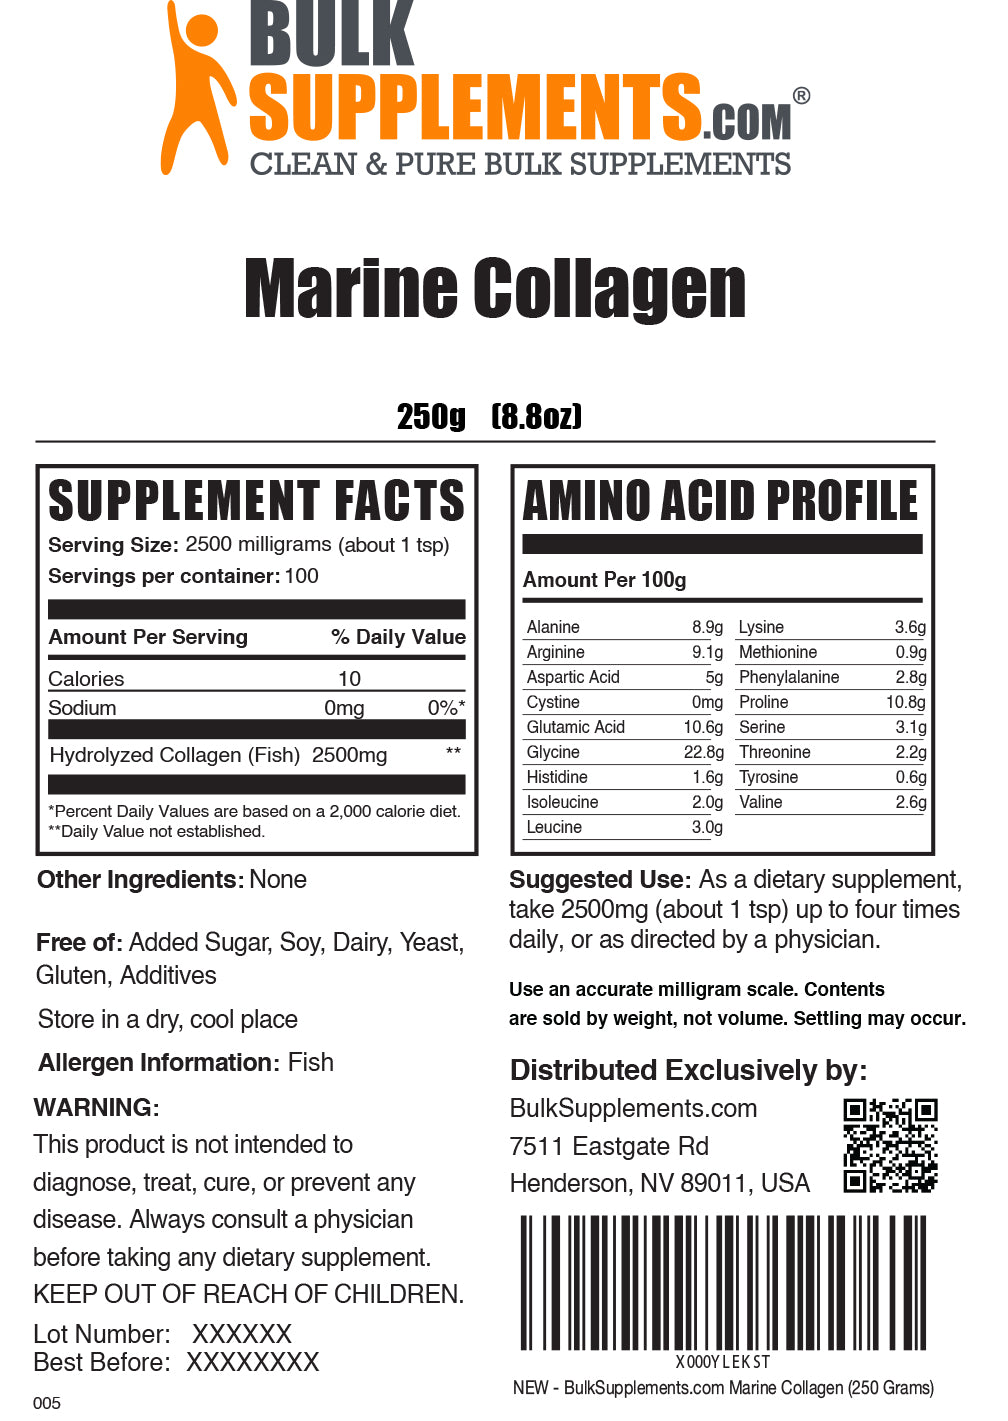 Marine collagen powder label 250g